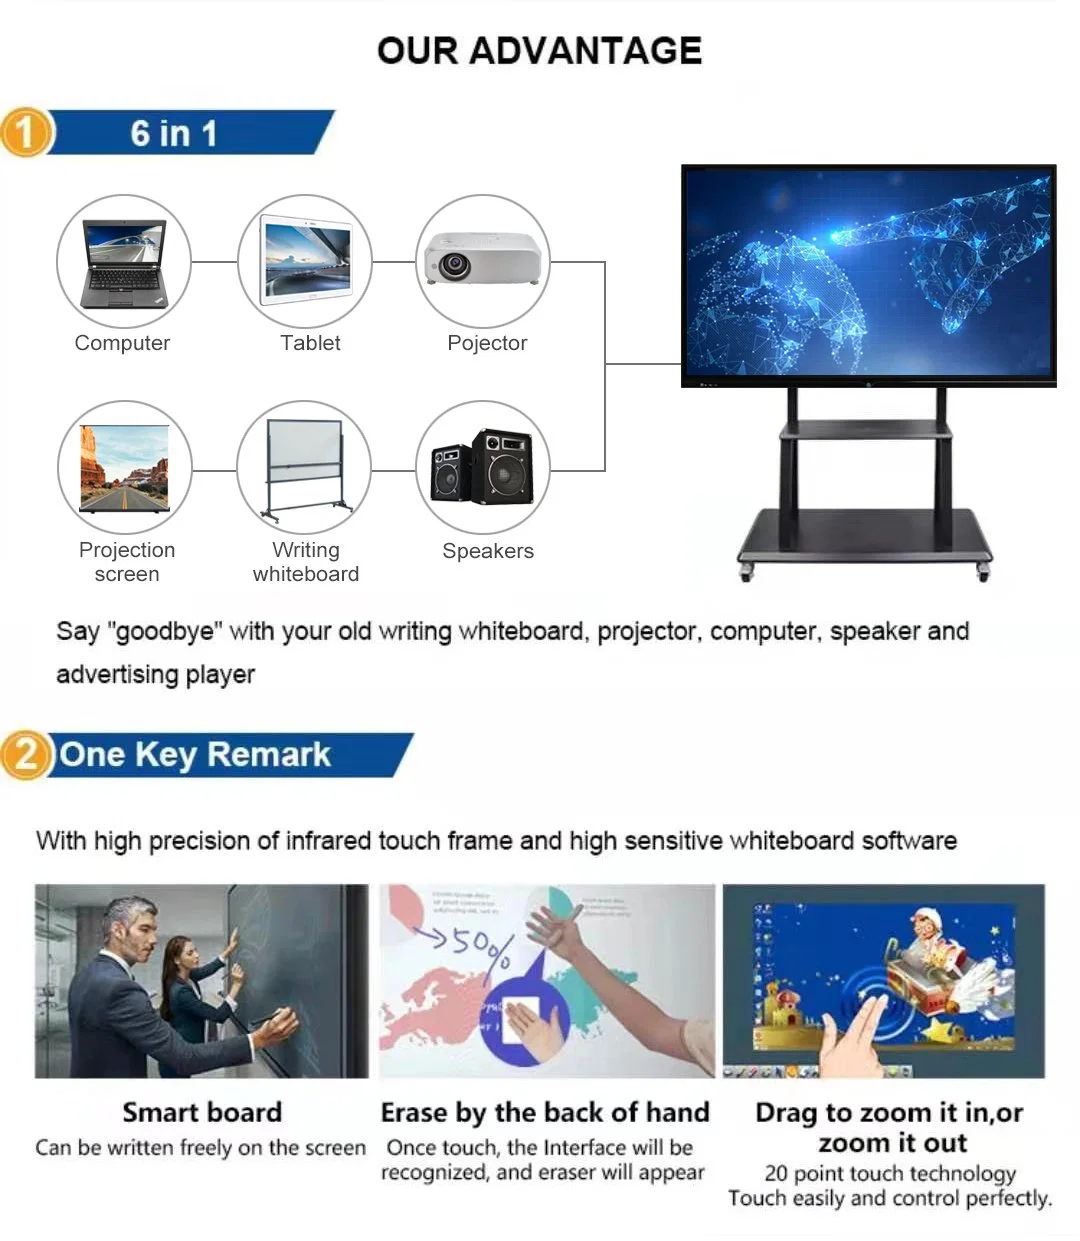 O Android TV Factory Ifp painel táctil LCD exibe quadro branco interativo 75" 86" conferência de vídeo placa inteligente com o Google Player Flat Panel Monitor múltiplos pontos